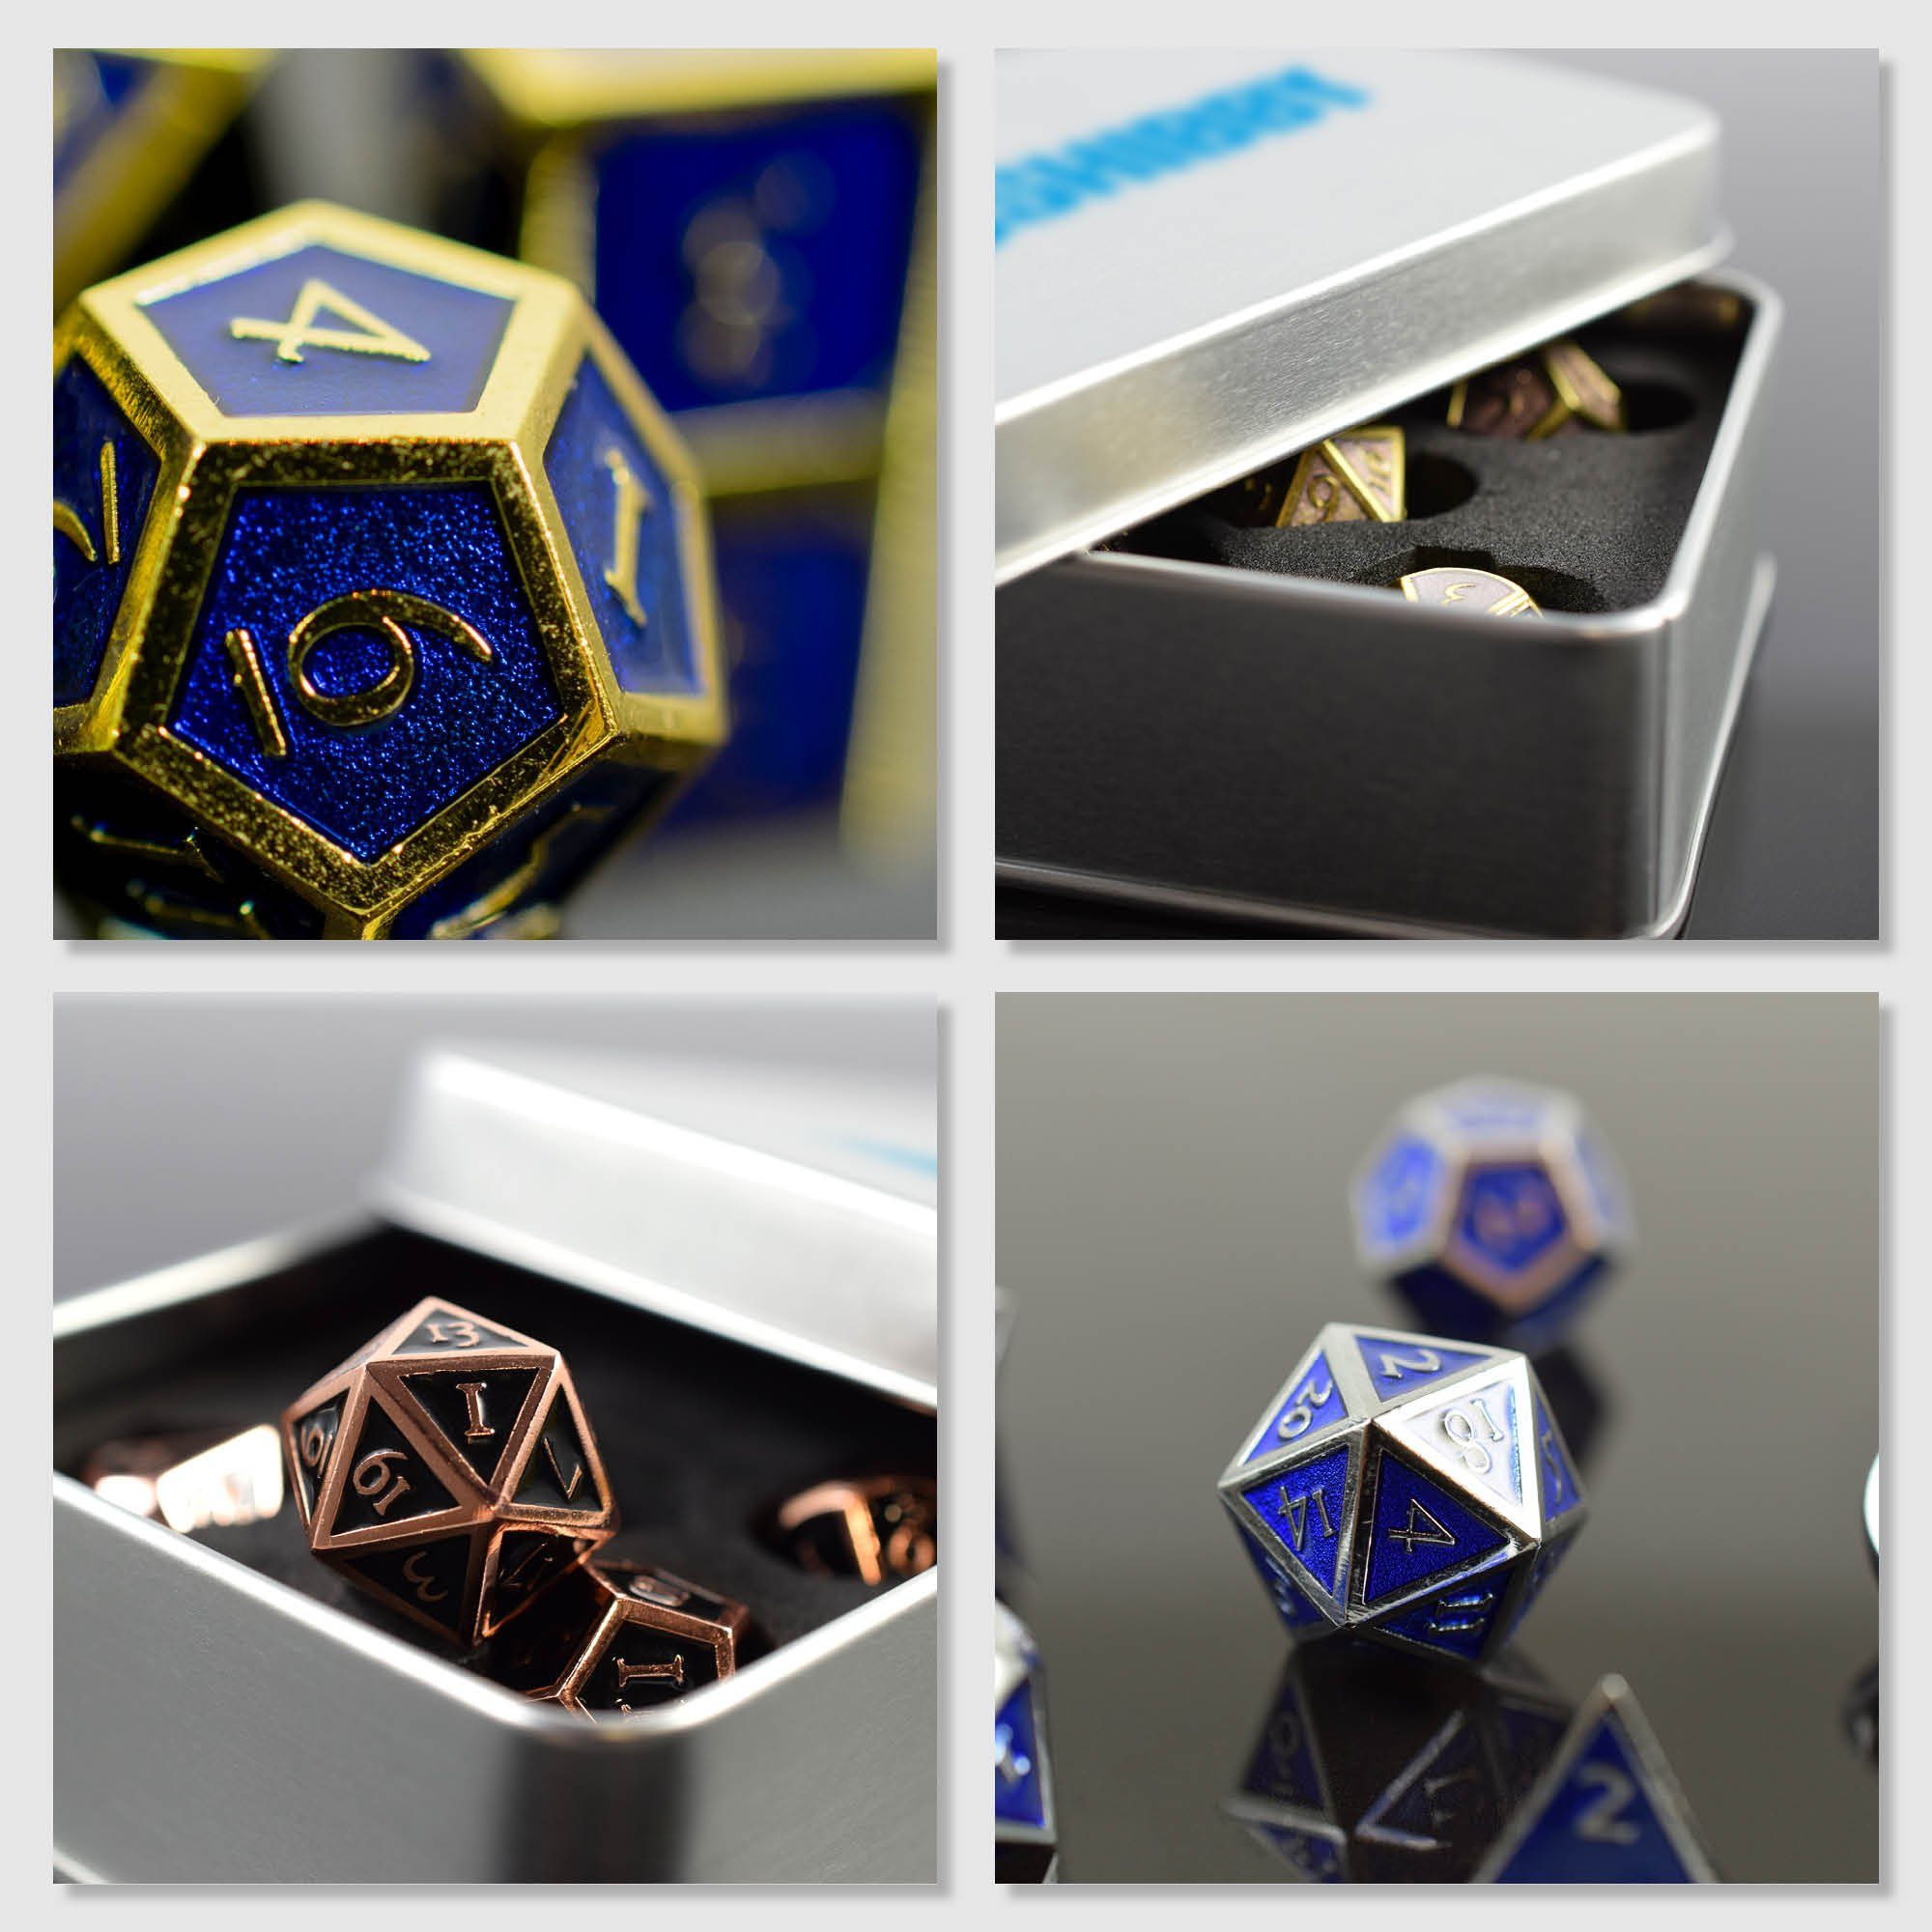 inkl. polyedrische Steampunk SHIBBY Gold/Blau Optik, Spielesammlung, 7 in Metall-DND-Würfel Aufbewahrungsbox